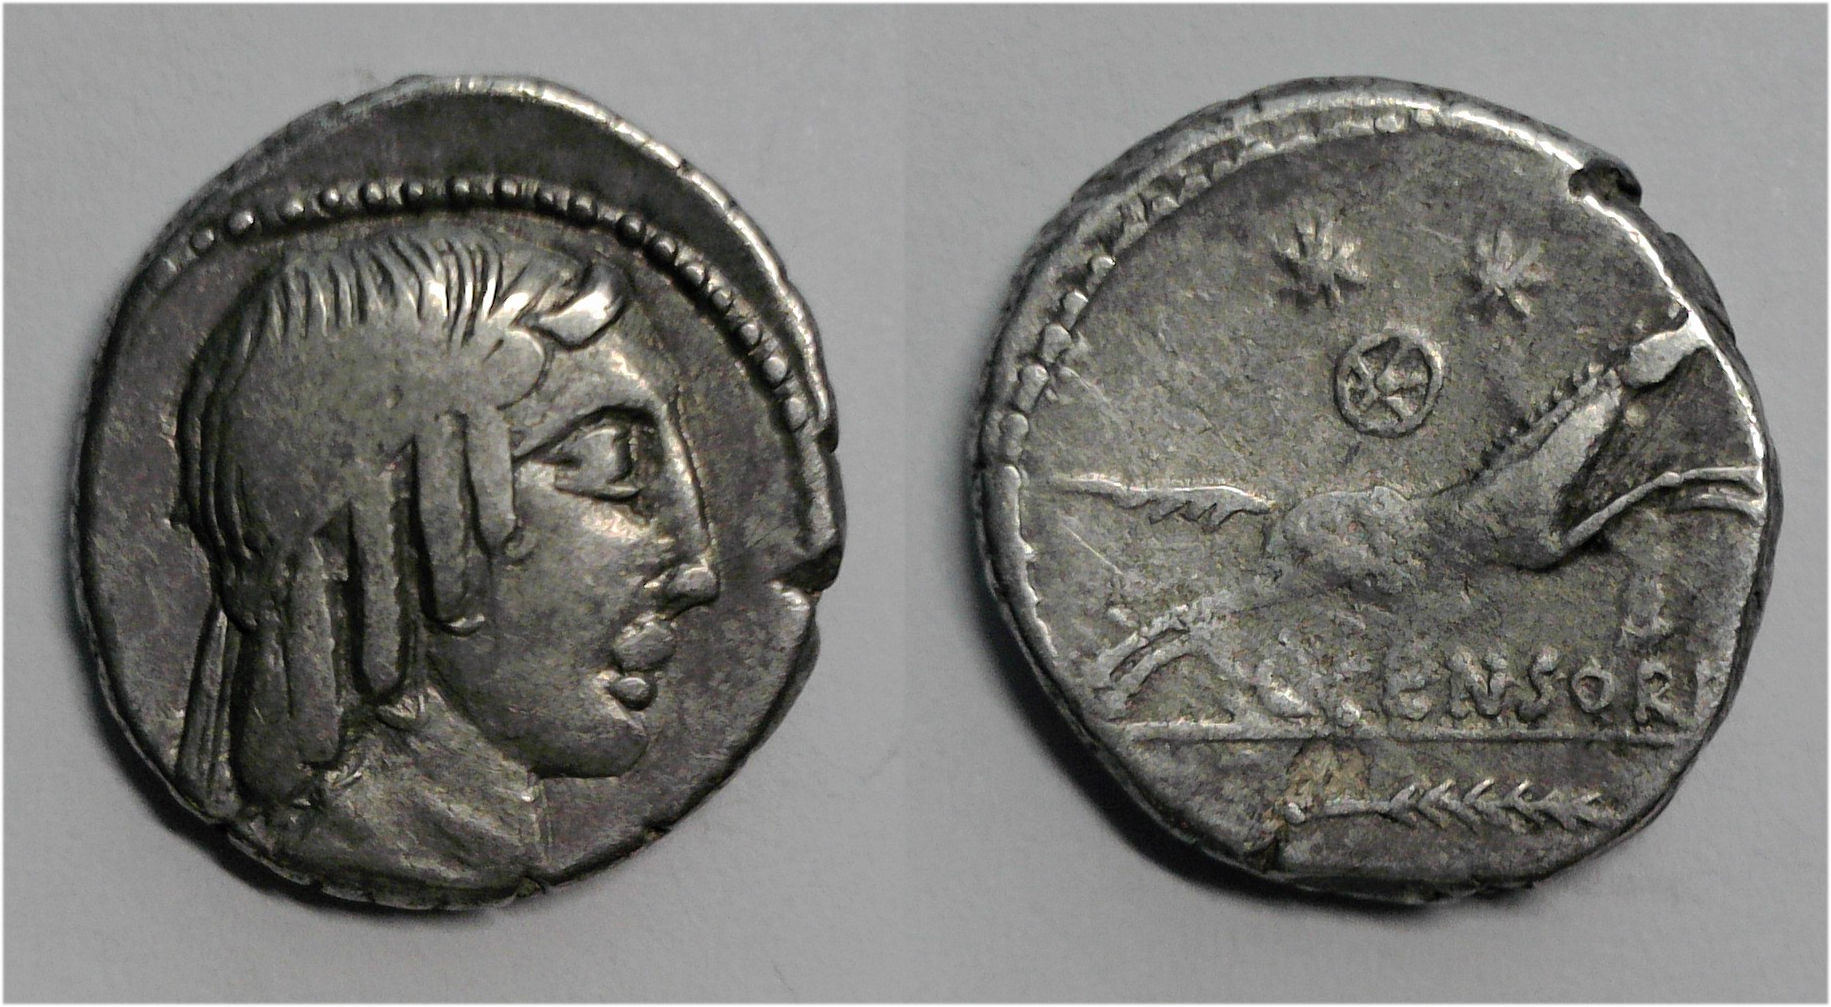 L Censorinus denarius.jpg